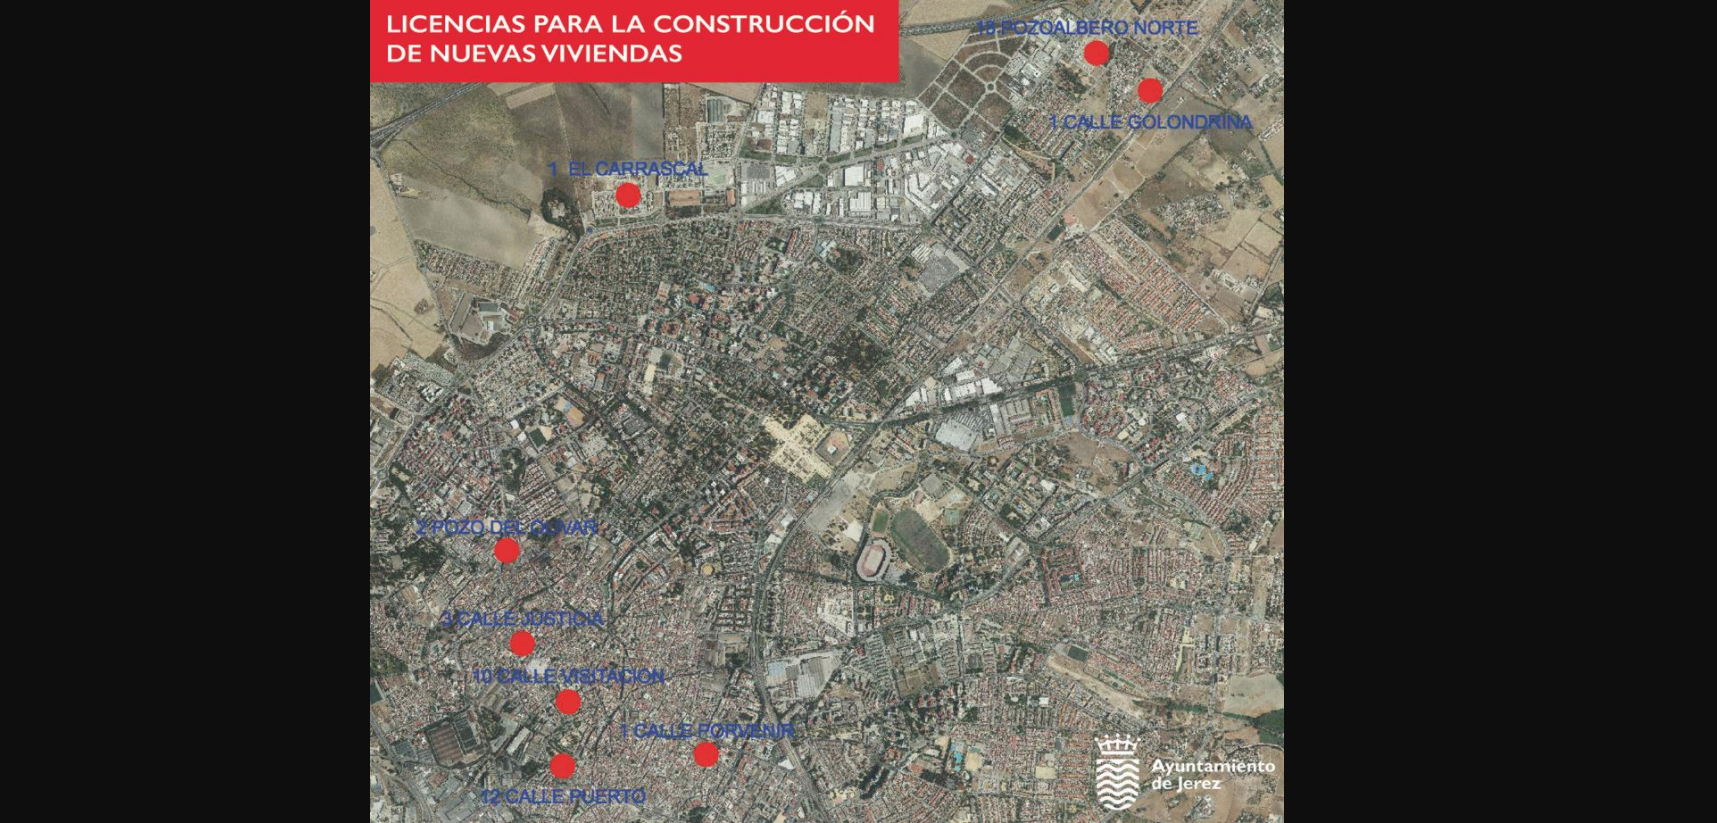 Las zonas donde se construirán las nuevas viviendas en Jerez.